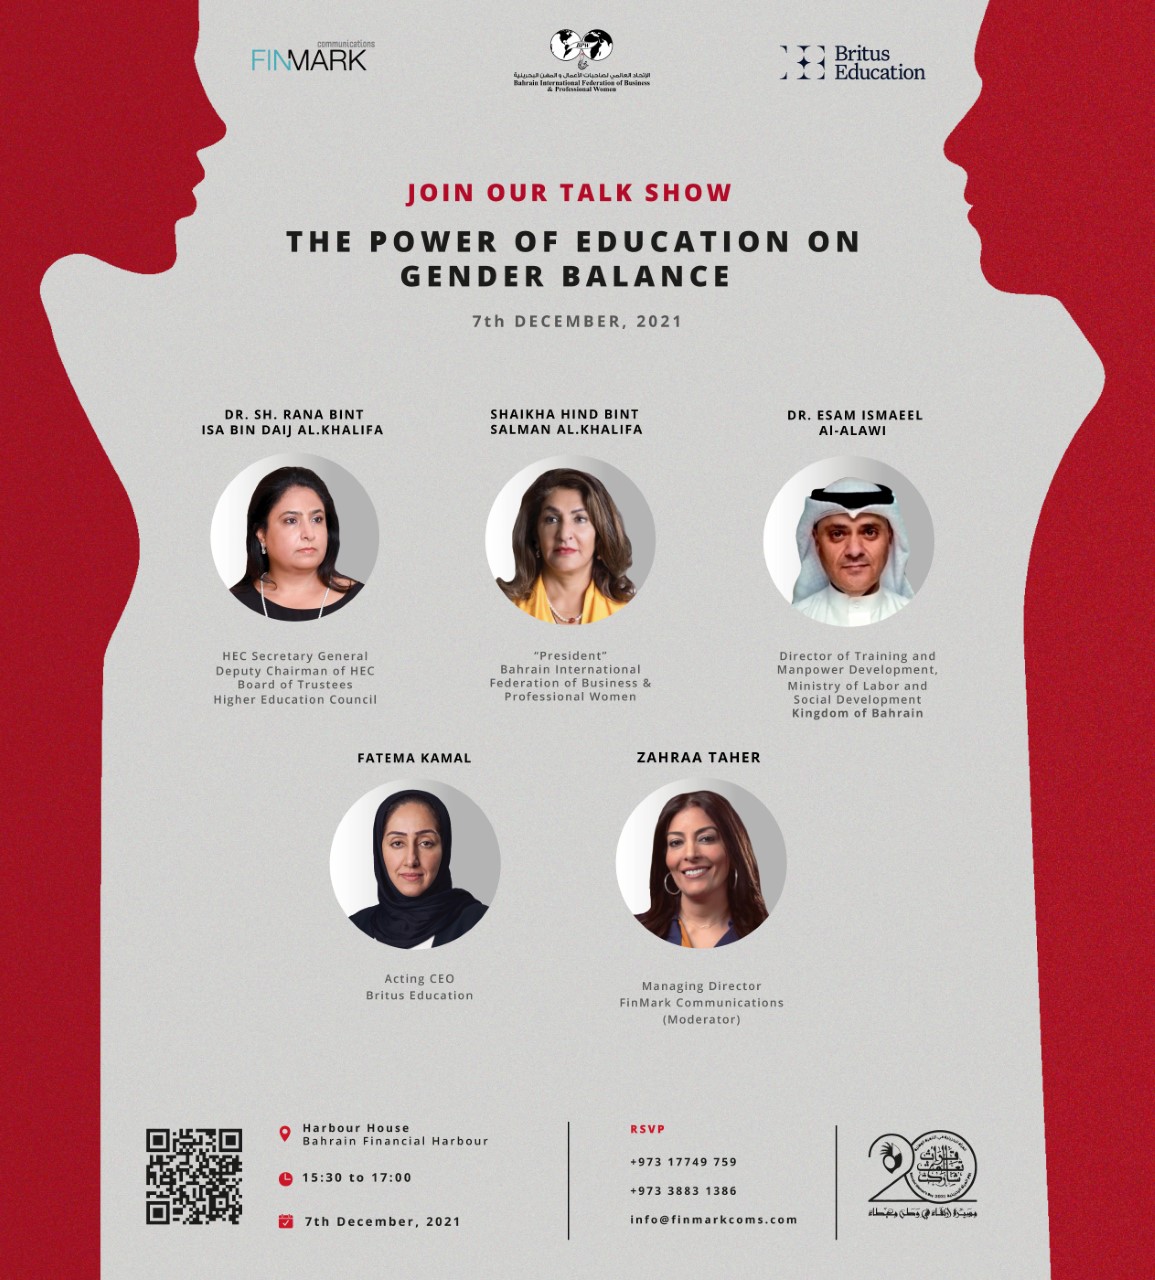 فين مارك كوميونيكيشنس والاتحاد العالمي لصاحبات الأعمال والمهن البحرينية و بريتس التعليمية ينظمون حلقة حوارية سنوية